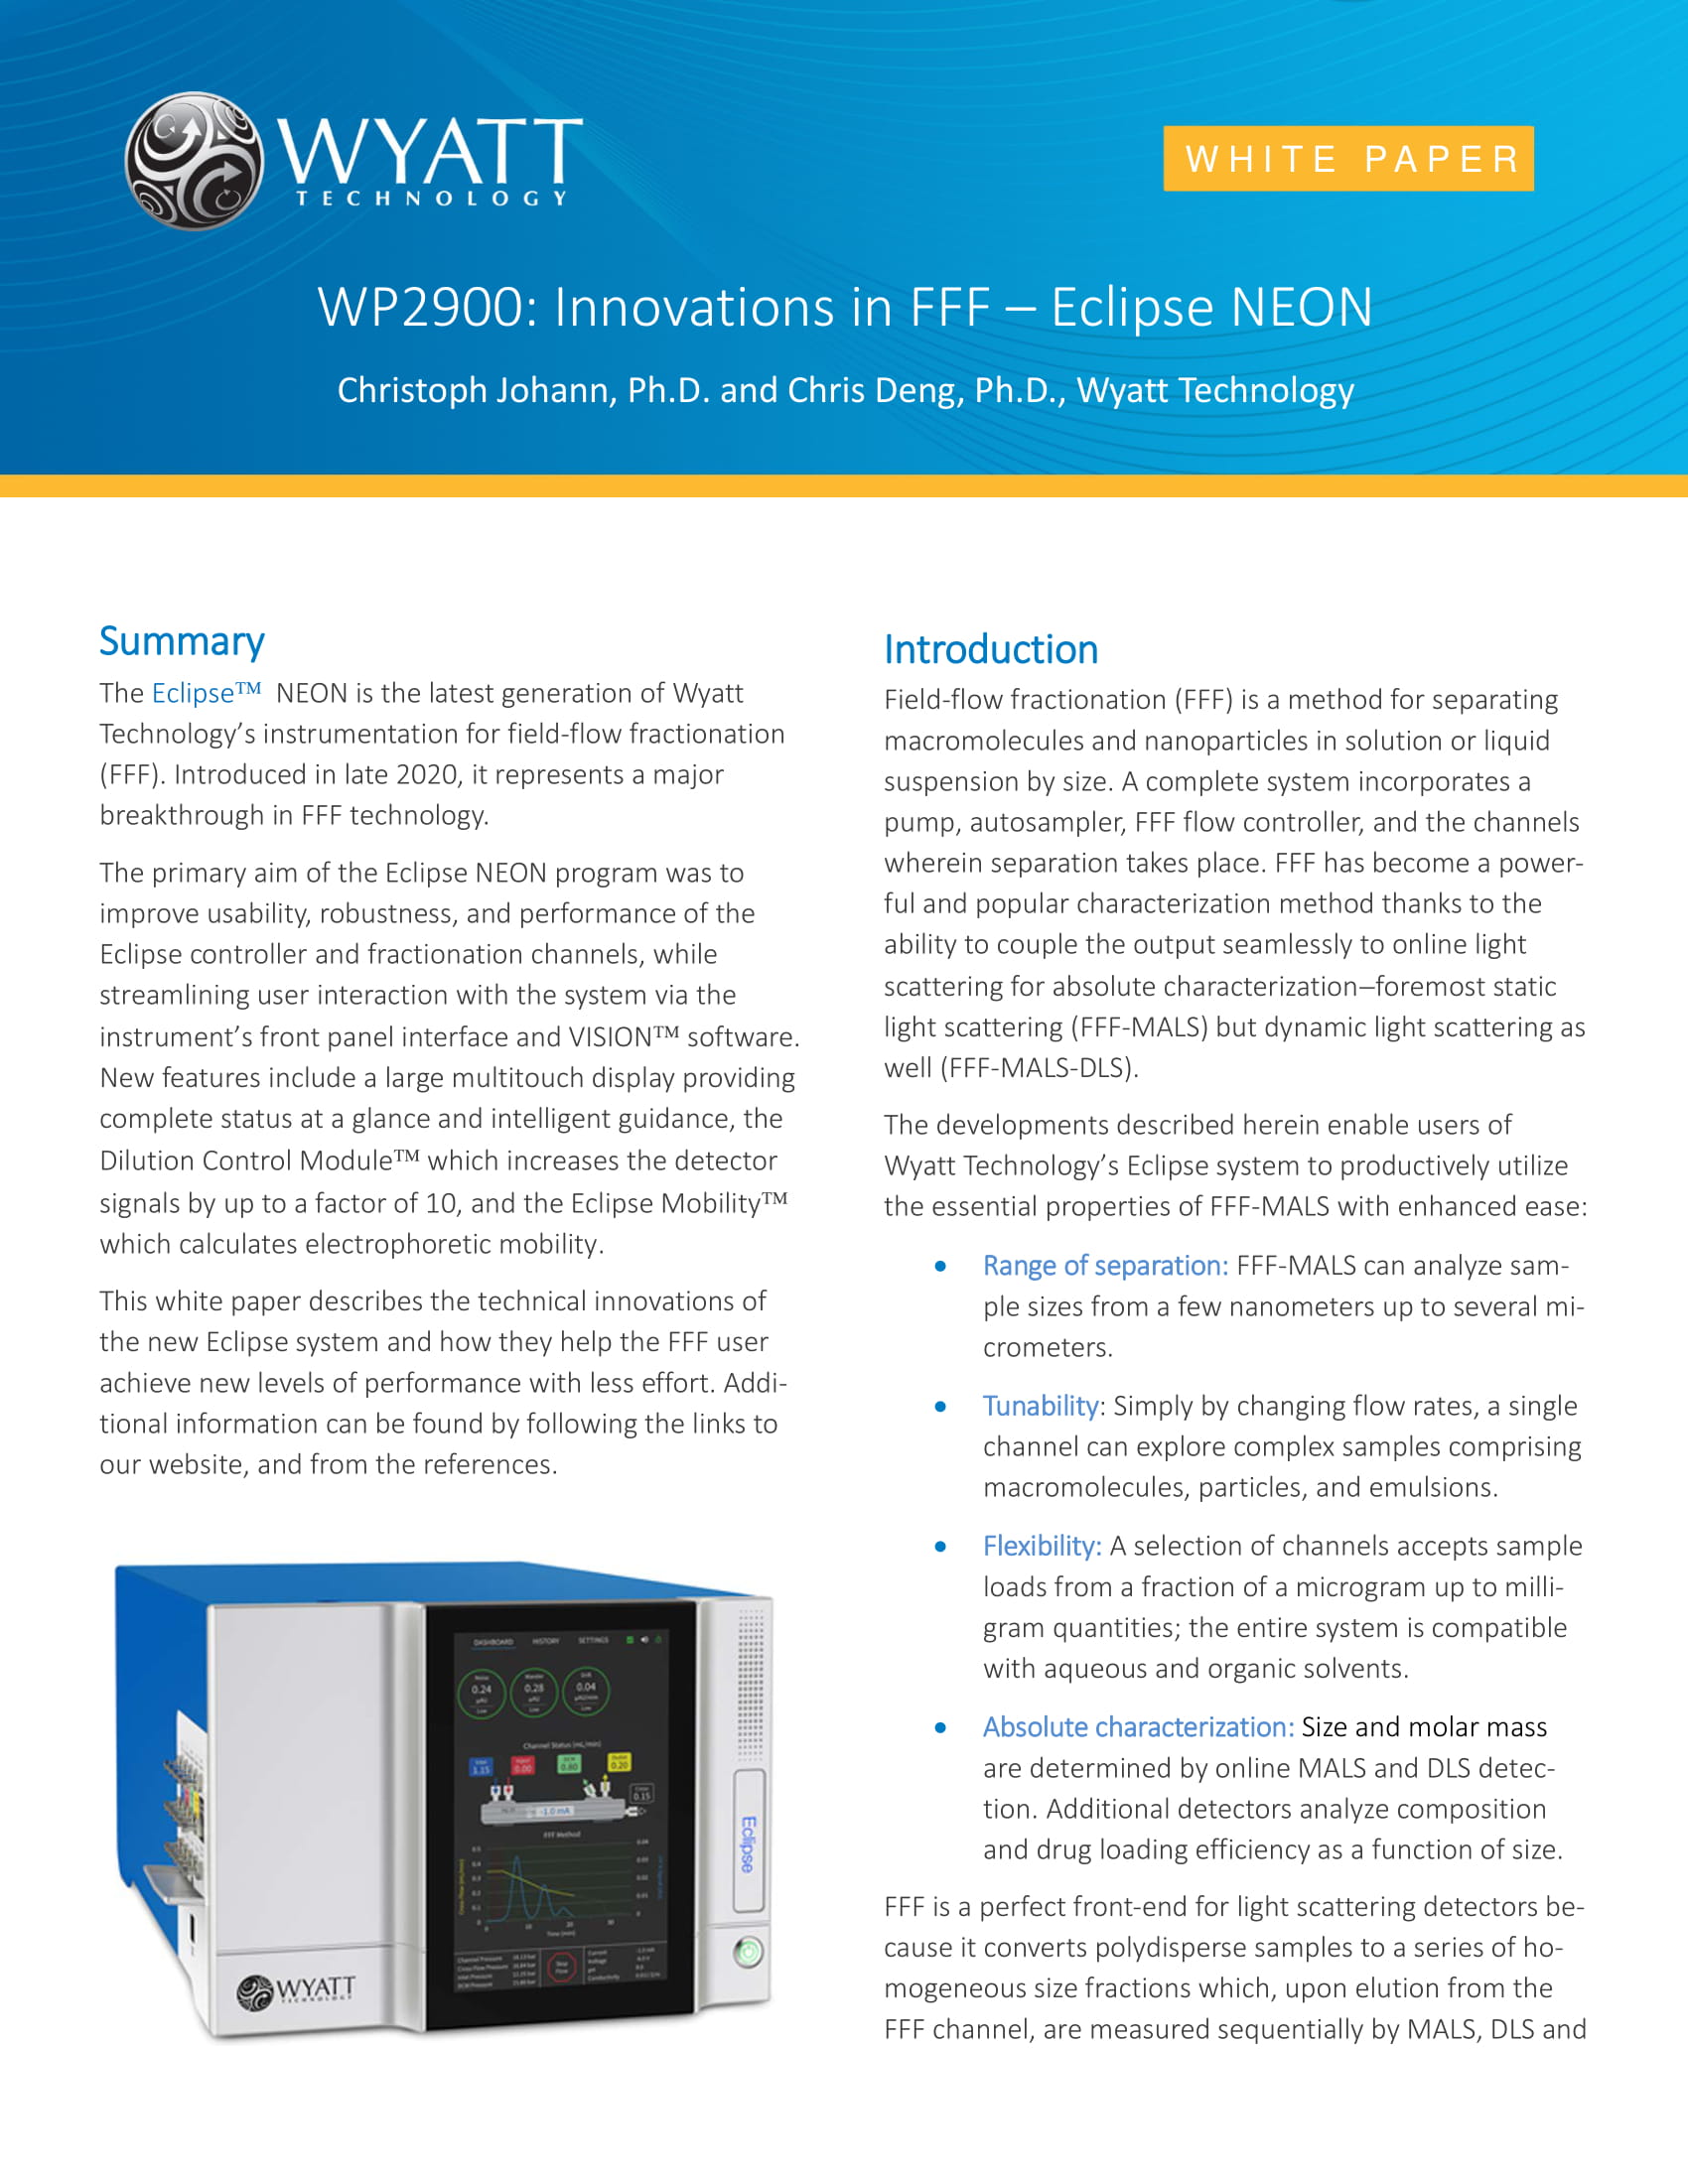 WP2900-Innovations-in-FFF-MALS-DLS-Eclipse-NEON-1.jpg